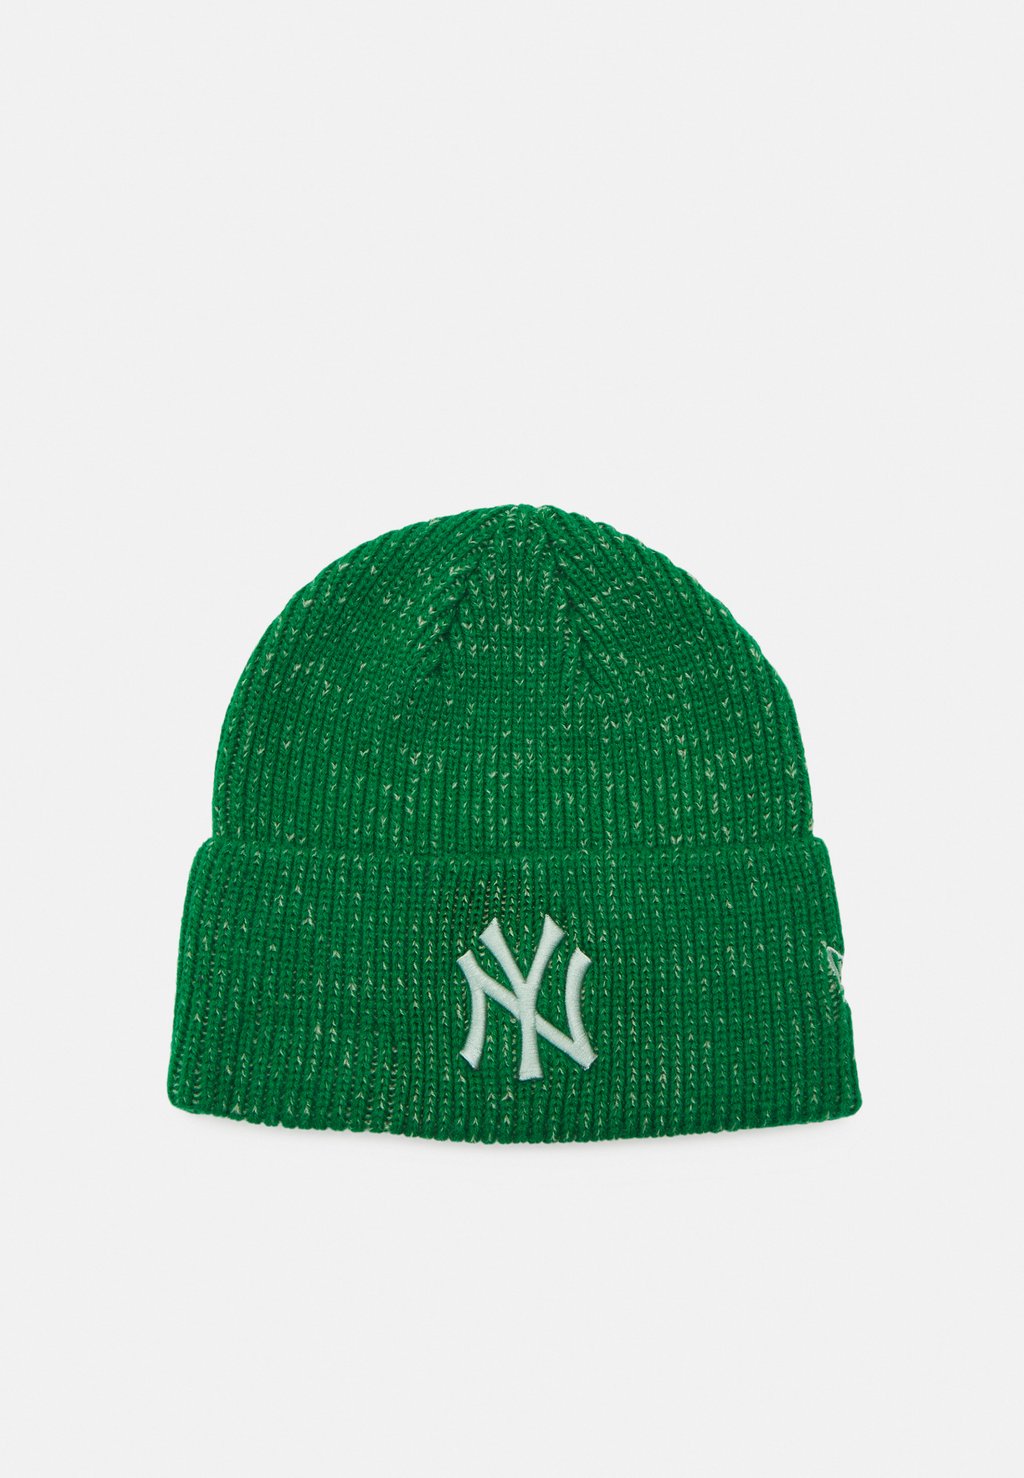 Шапка Шапка MARL WIDE CUFF NEYYAN UNISEX New Era, зеленый шапка badge cuff unisex new era цвет black